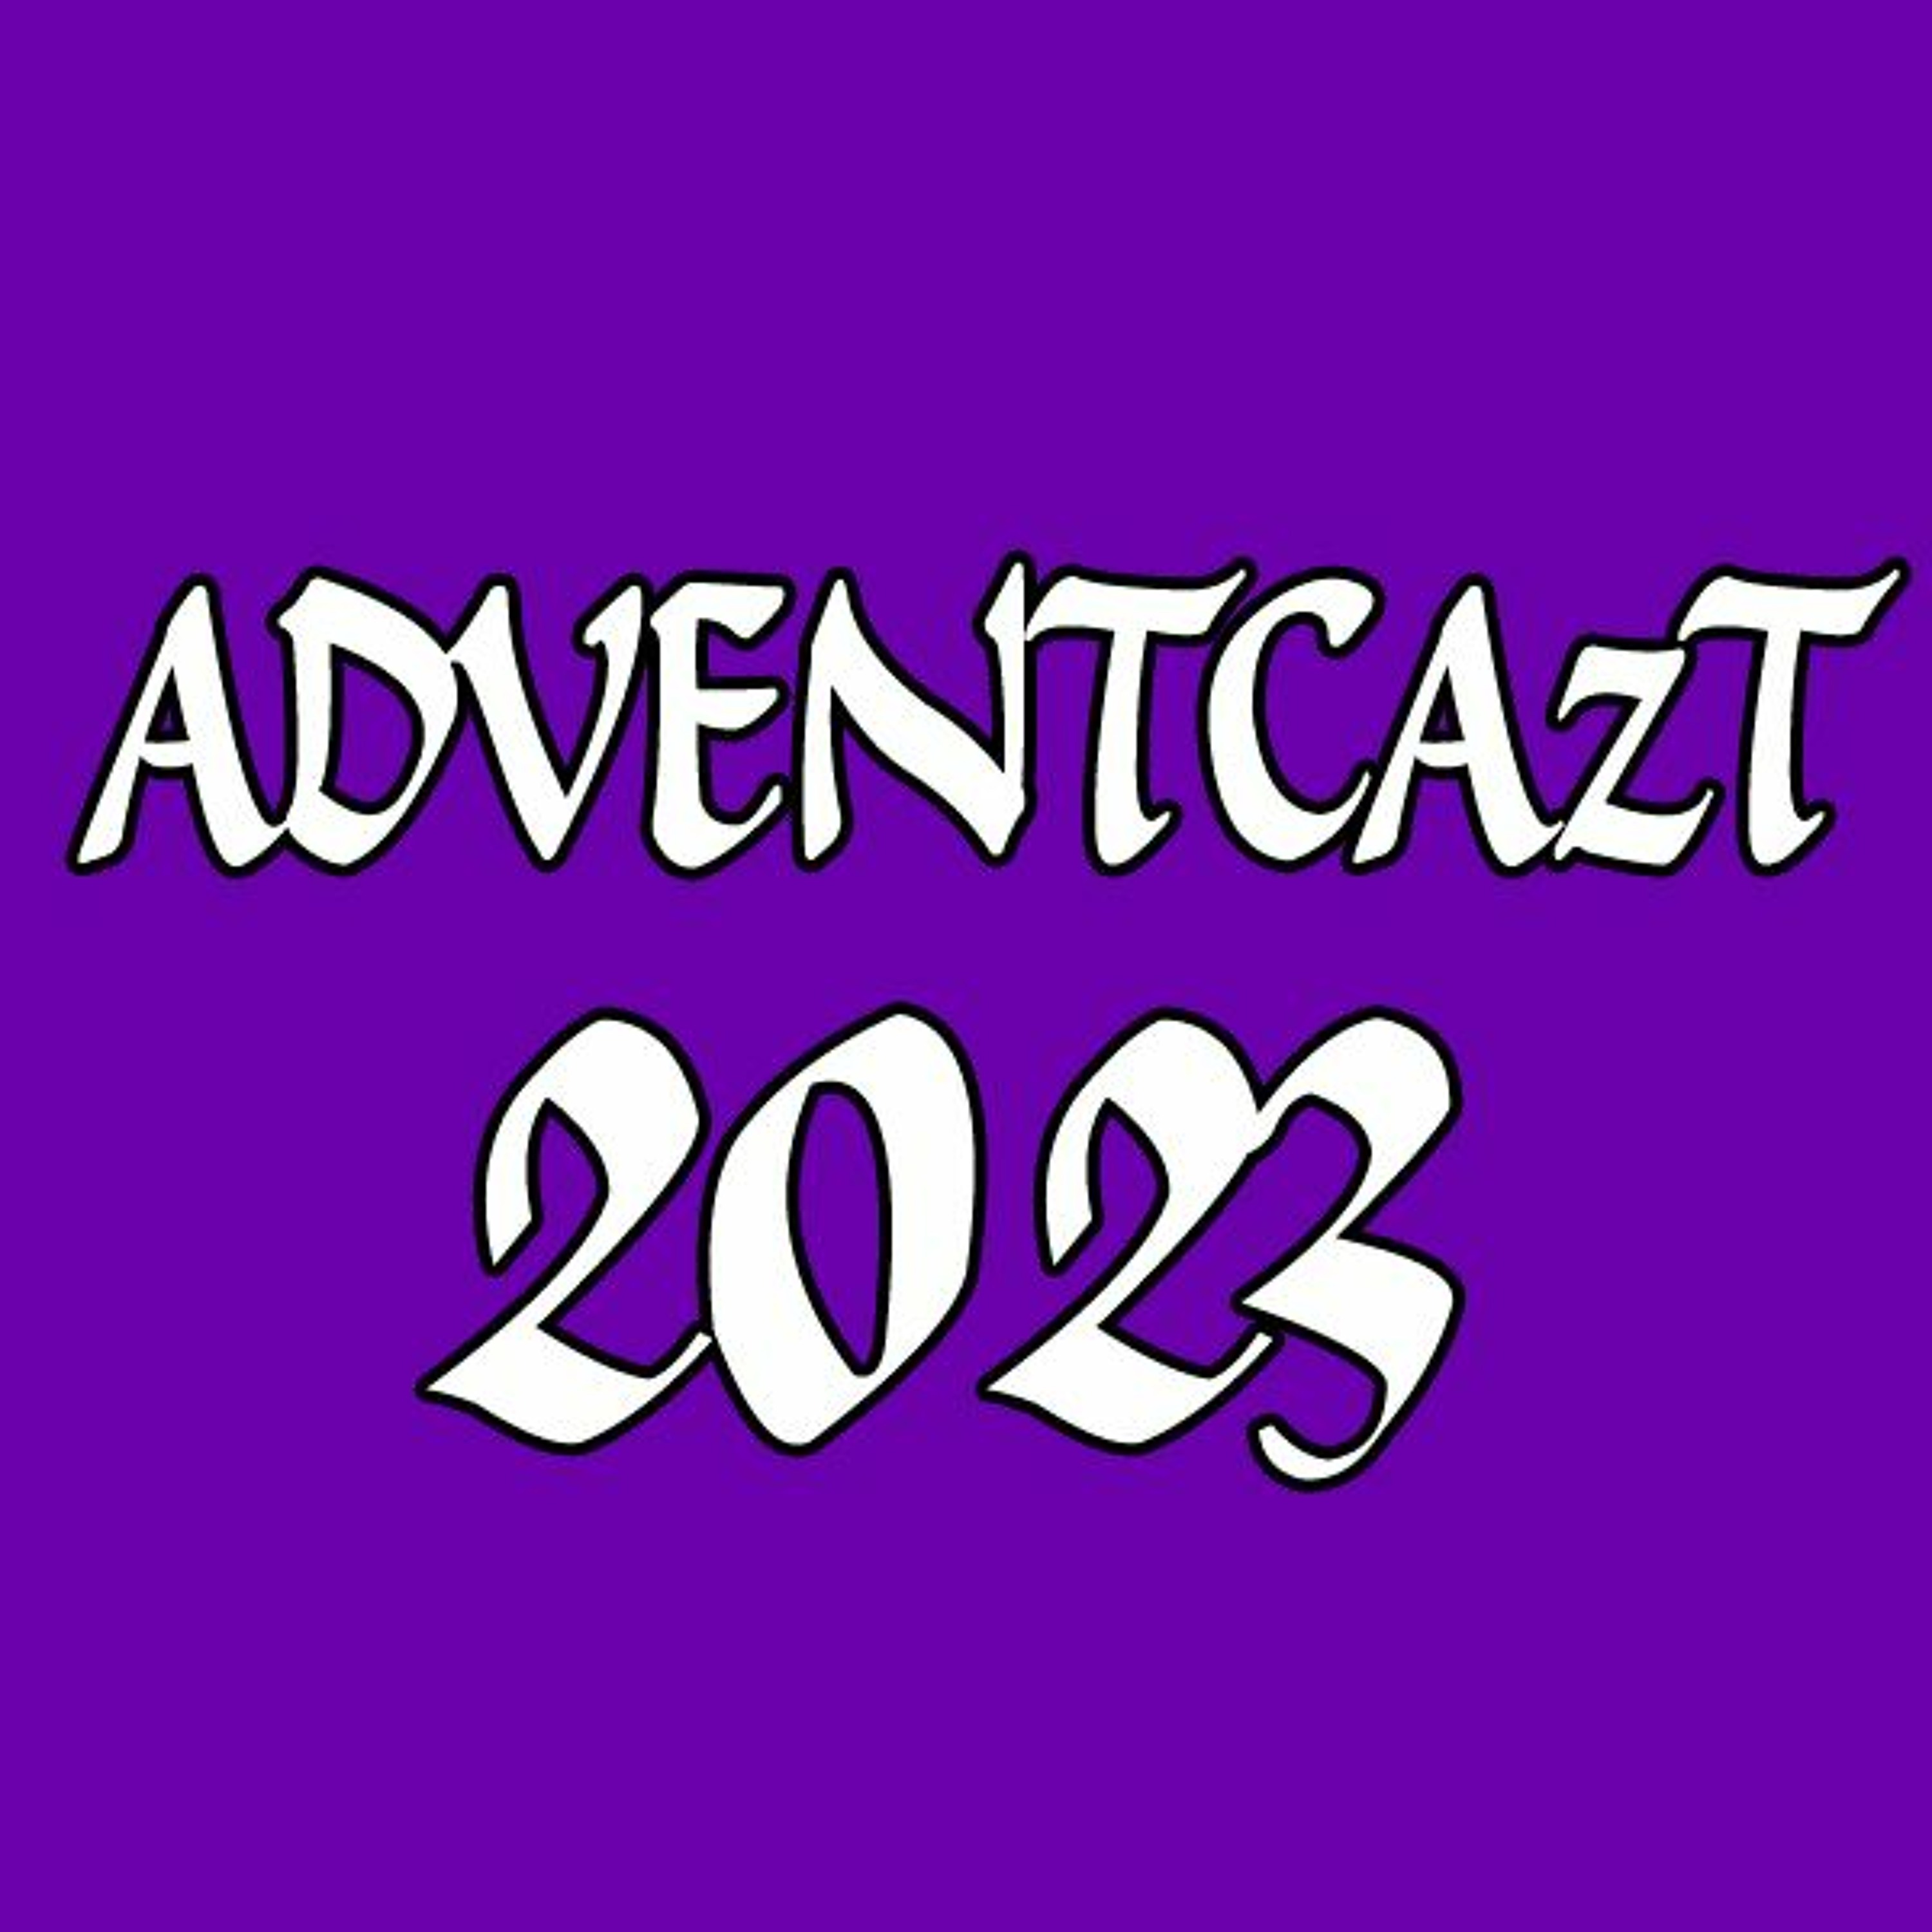 ADVENTCAzT 2023 – 16 – Monday 3rd Week of Advent: Meekness